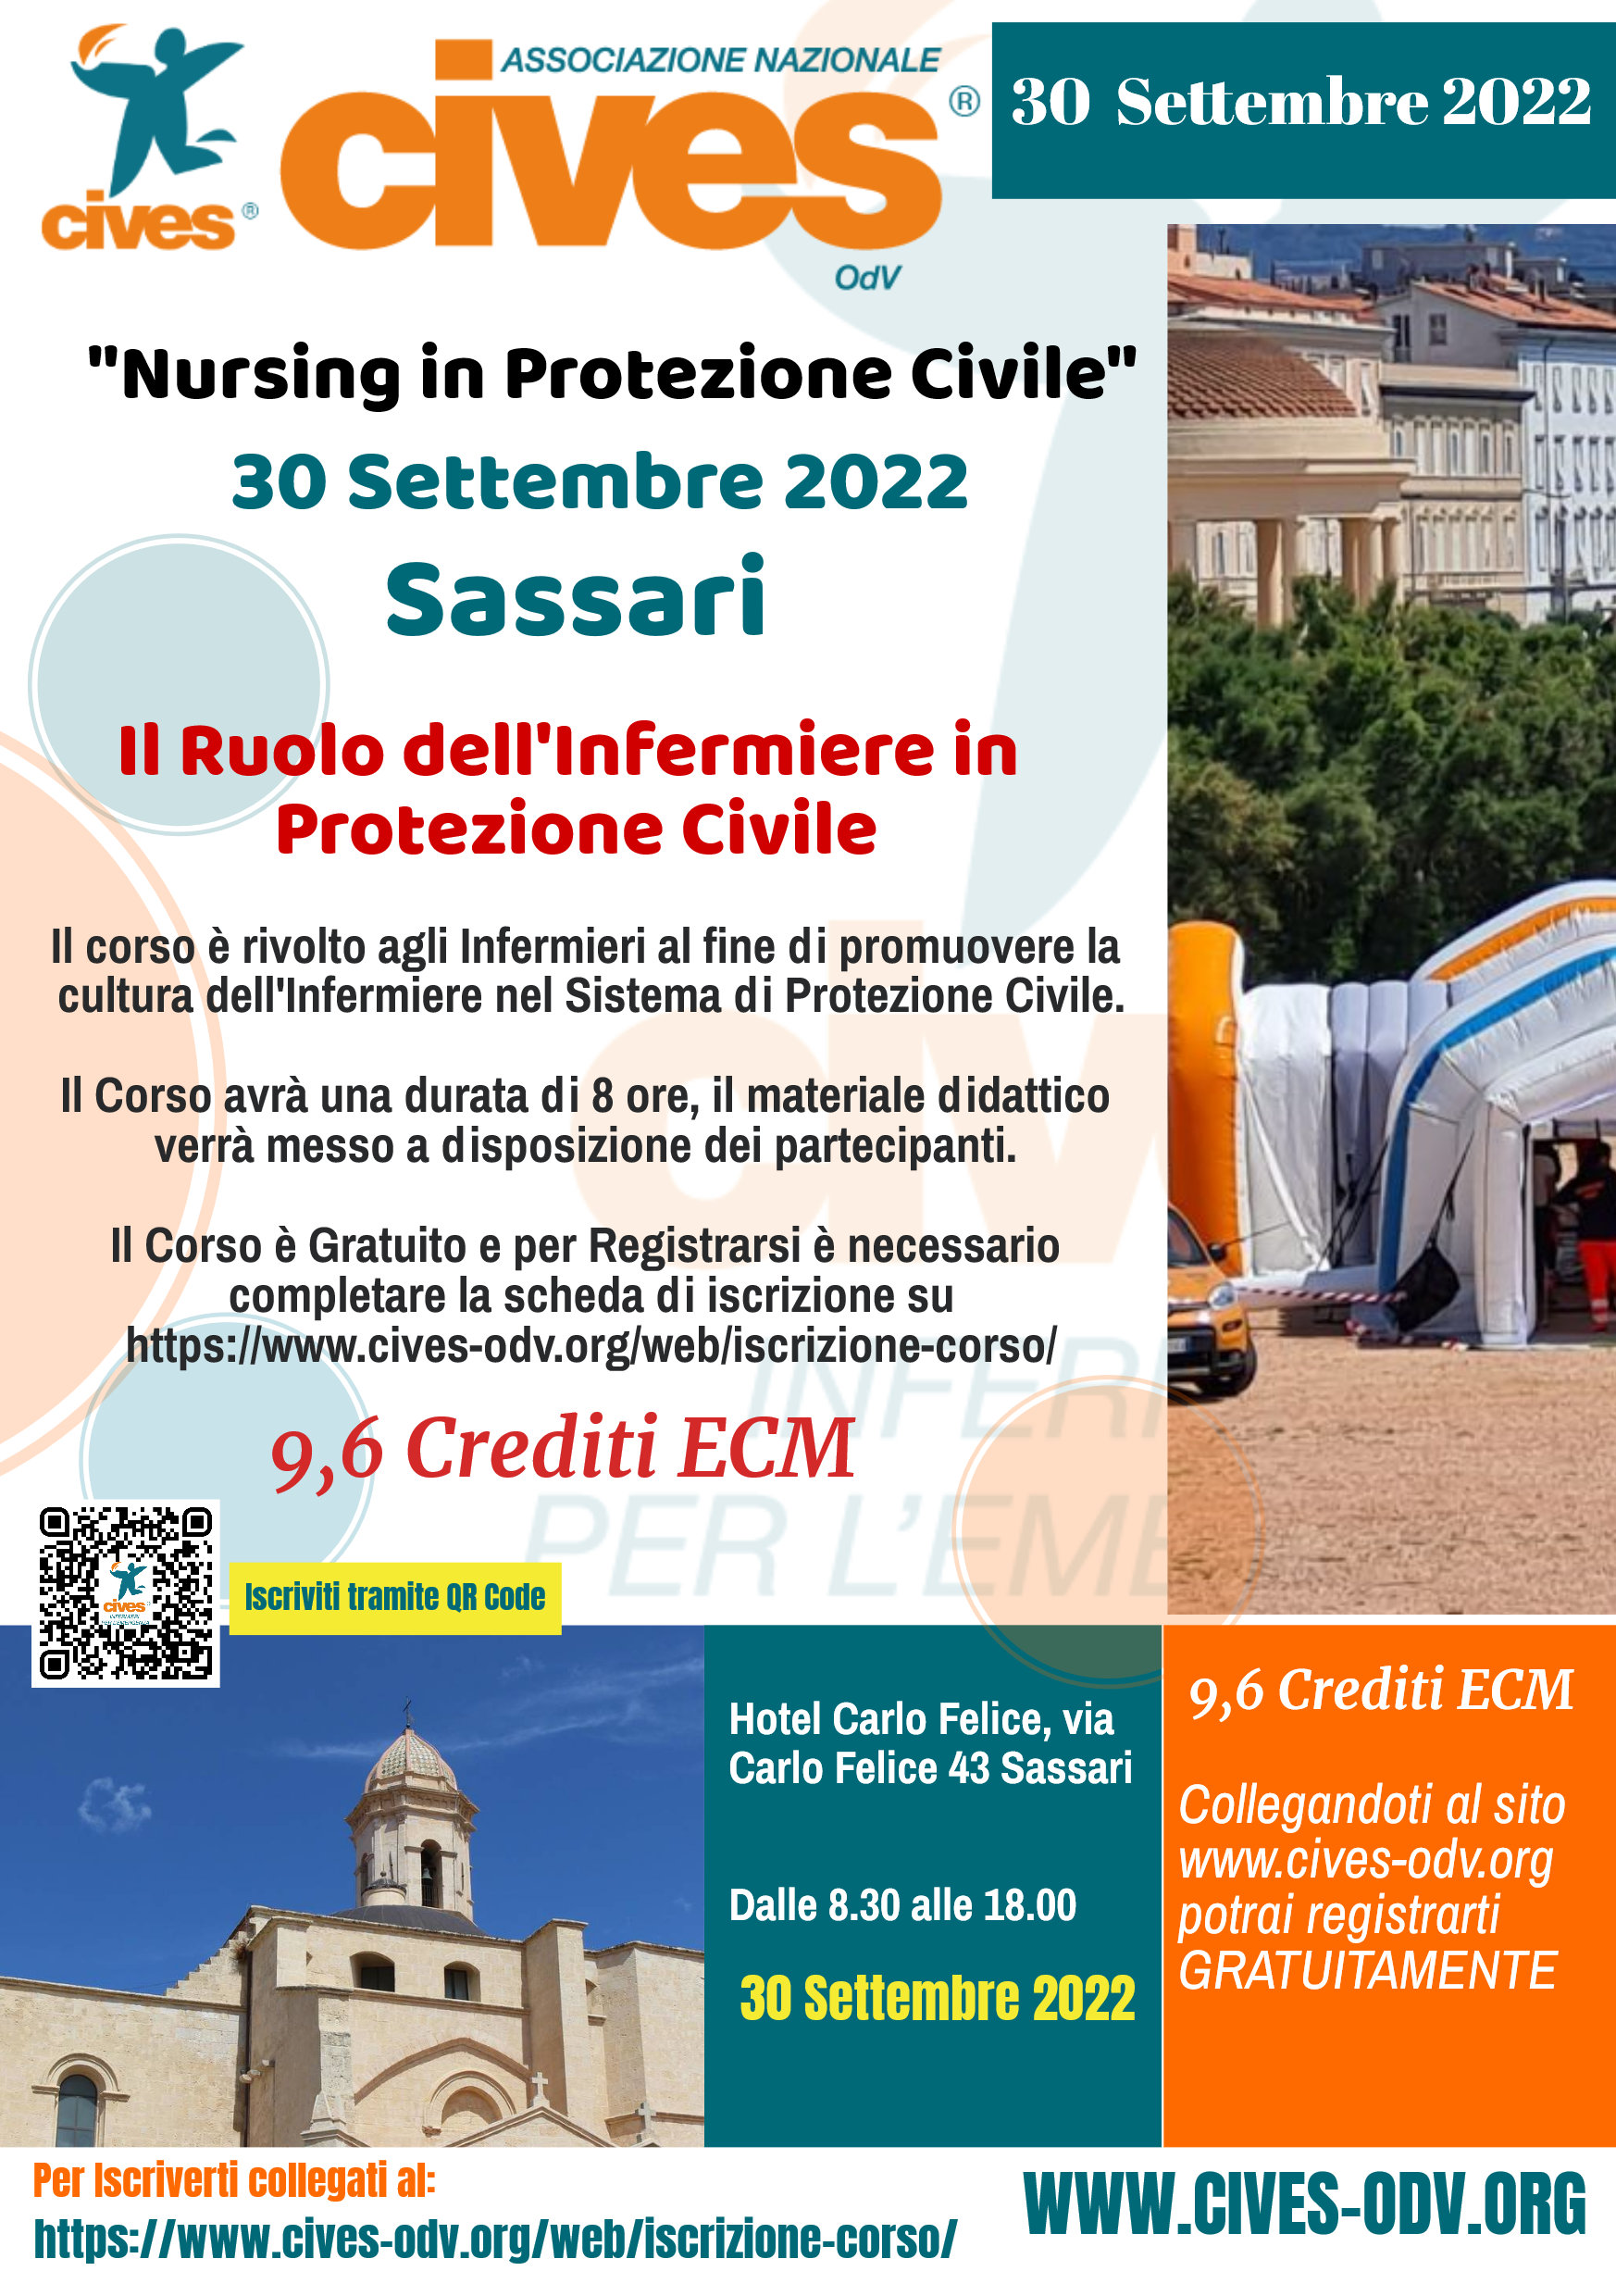 “Nursing in Protezione Civile”: Edizione di Sassari l’30 Settembre 2022